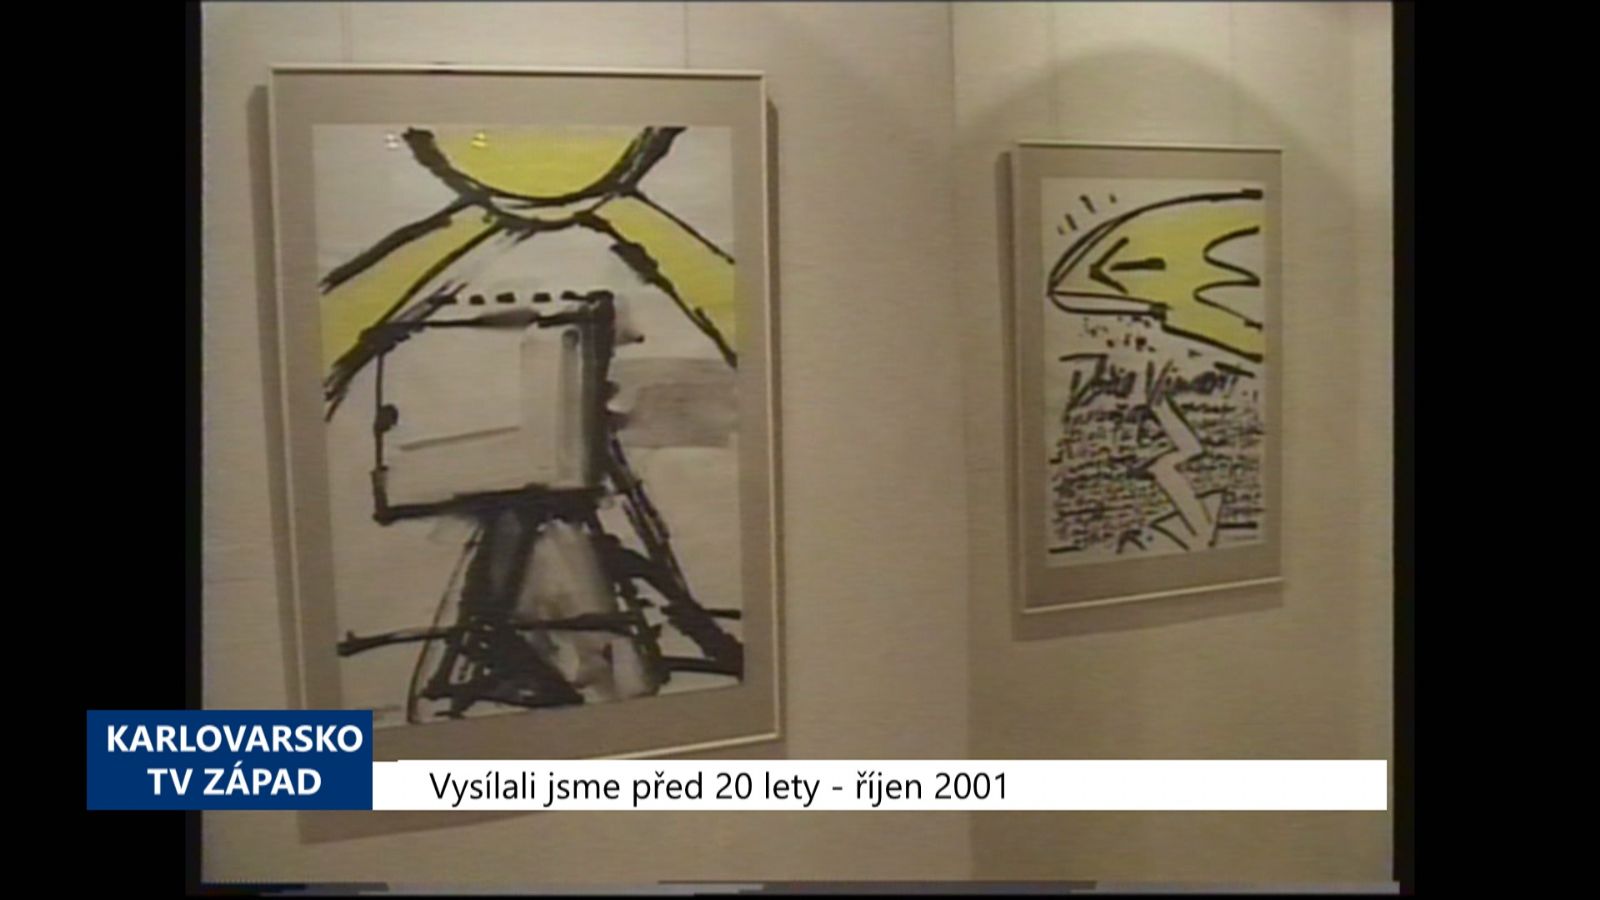 2001 – Cheb: V GVU vystavuje Richard Konvička (TV Západ)